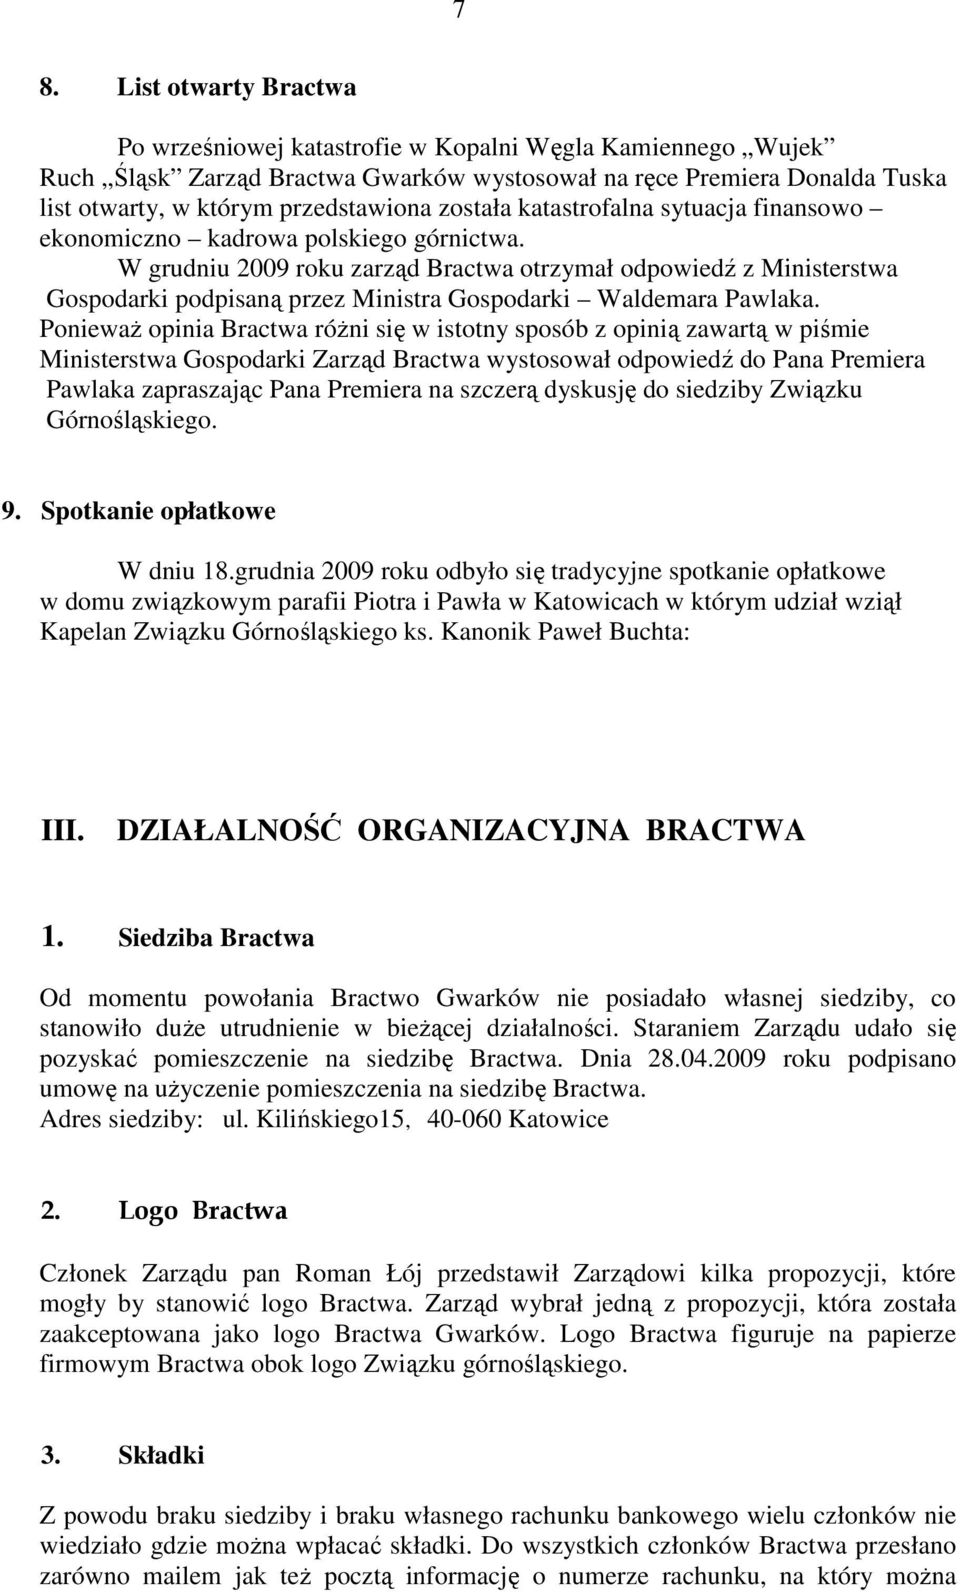 W grudniu 2009 roku zarząd Bractwa otrzymał odpowiedź z Ministerstwa Gospodarki podpisaną przez Ministra Gospodarki Waldemara Pawlaka.